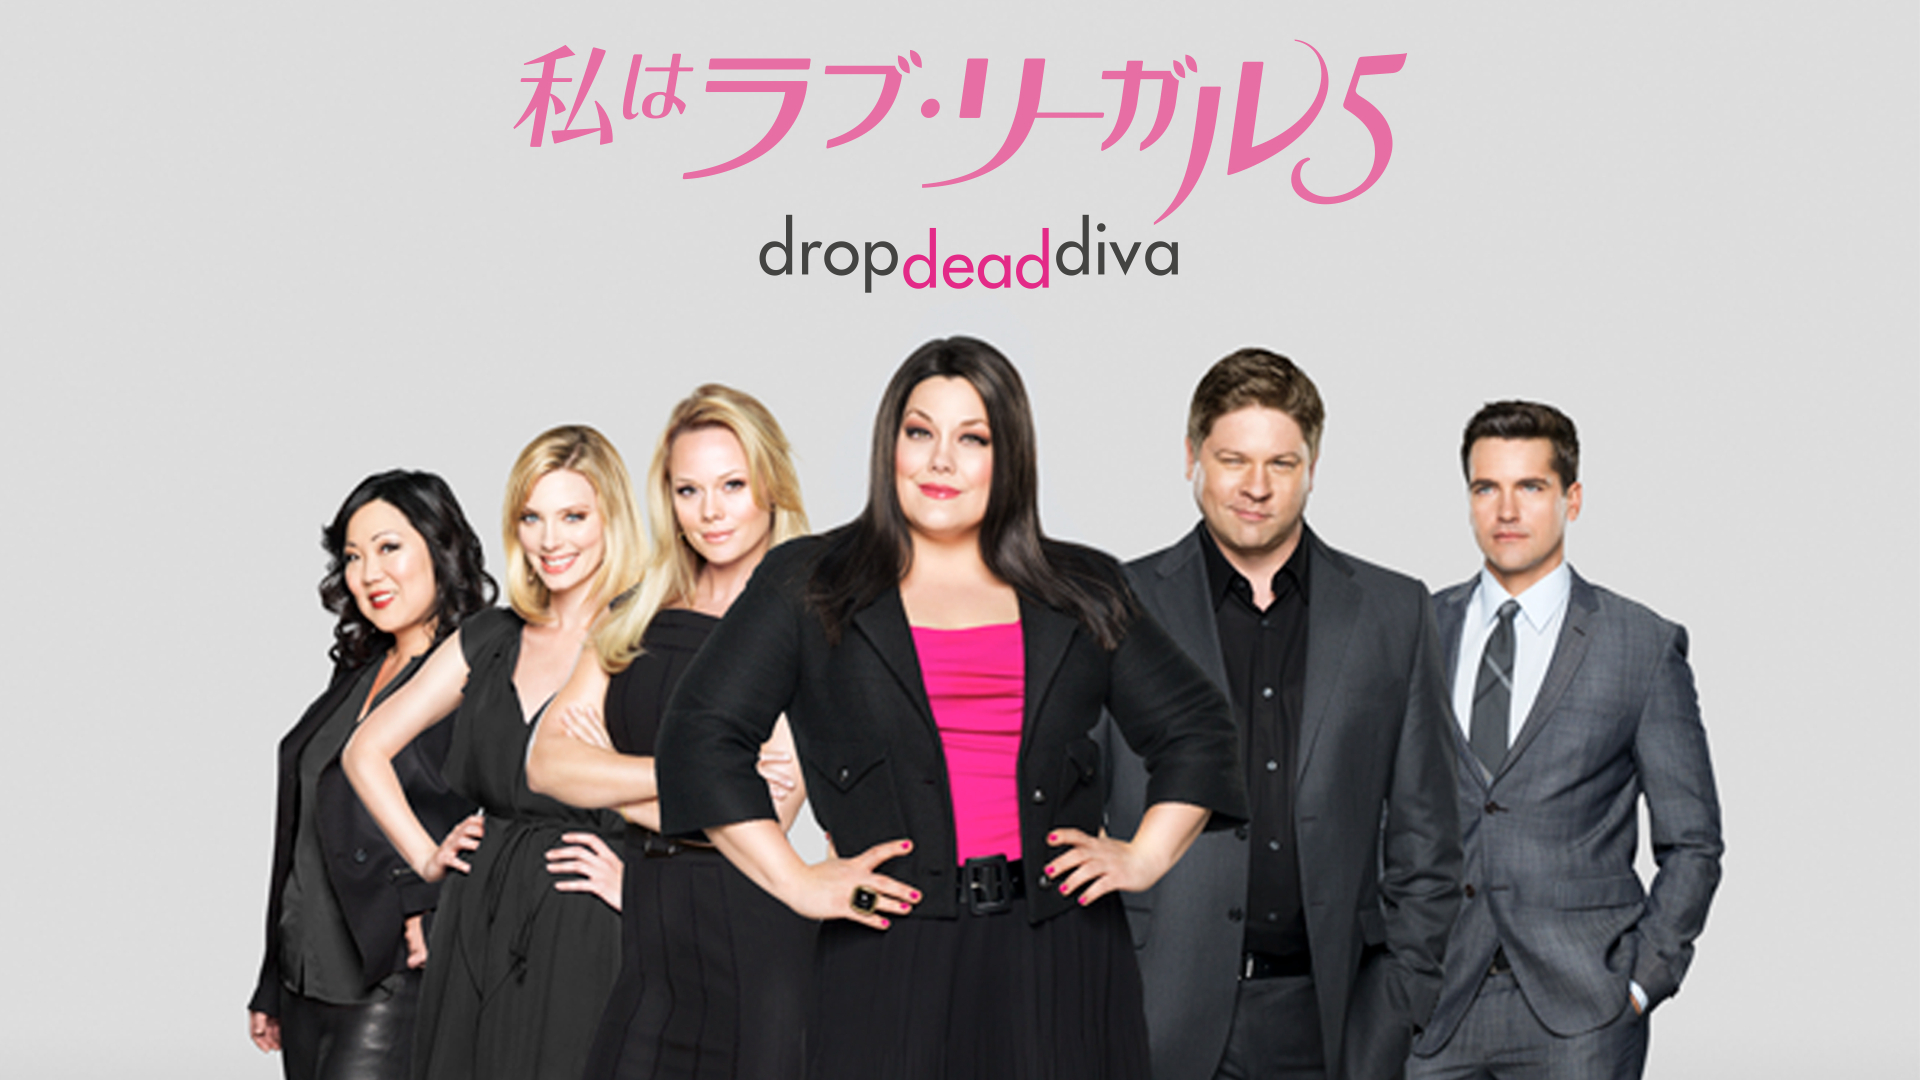 私はラブ・リーガル DROP DEAD Diva シーズン5 DVD-BOX :20210911120133-00560:MKストアWEB店 - 通販  - Yahoo!ショッピング - アメリカのテレビドラマ